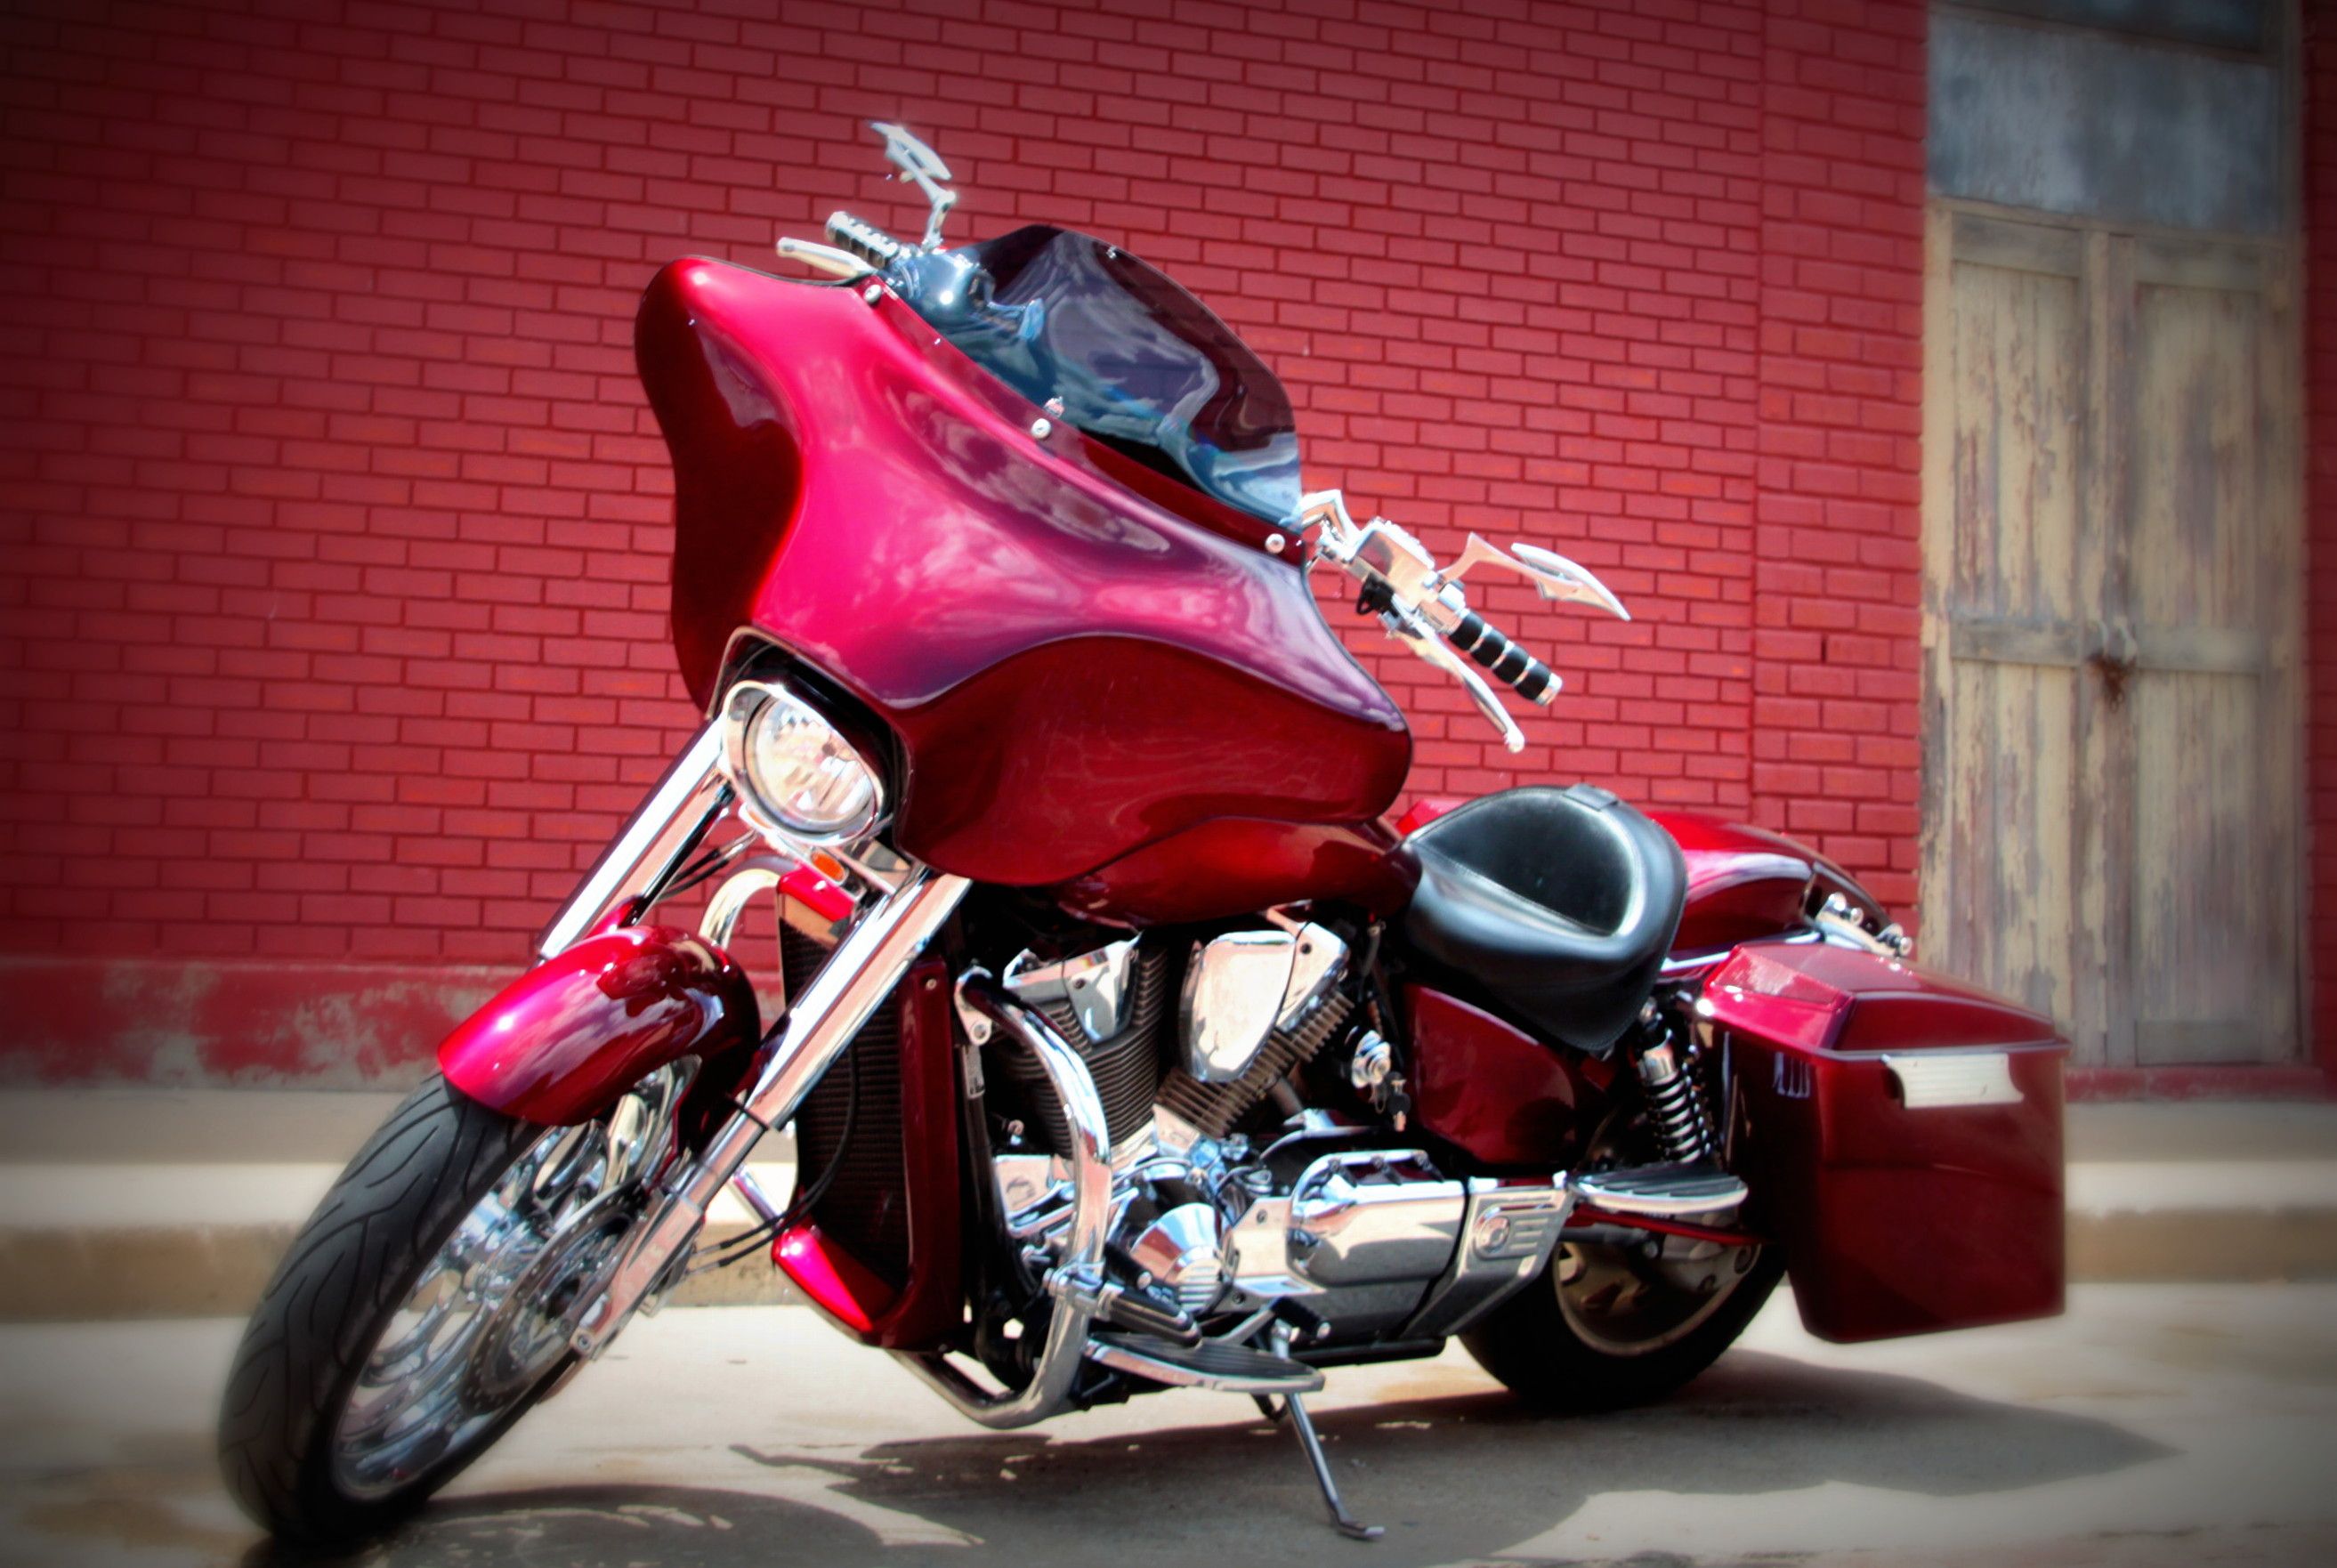 Тест-драйв мотоцикла honda vtx1800 от владимира здорова, николая богомолова. моторевю.